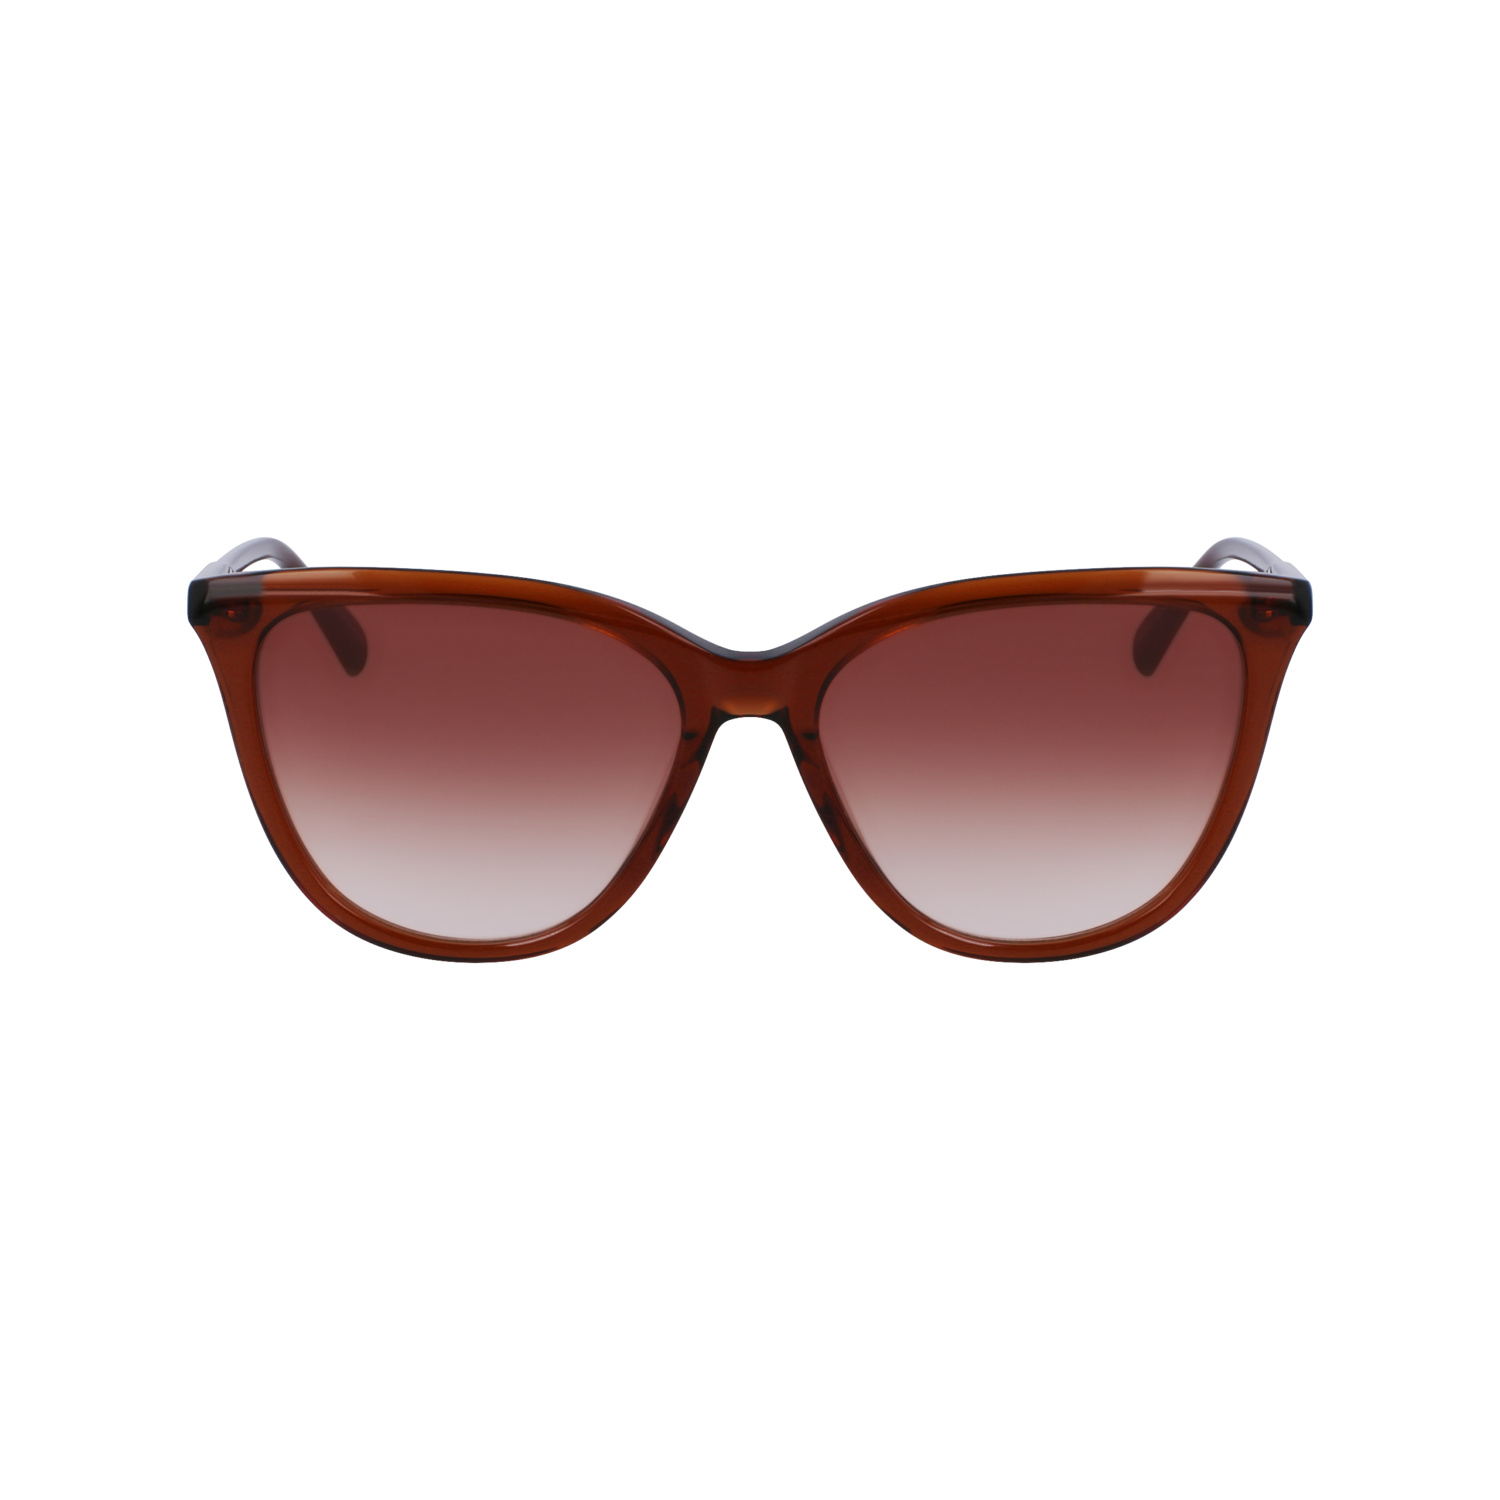 Longchamp Sunglasses In Brown/beige